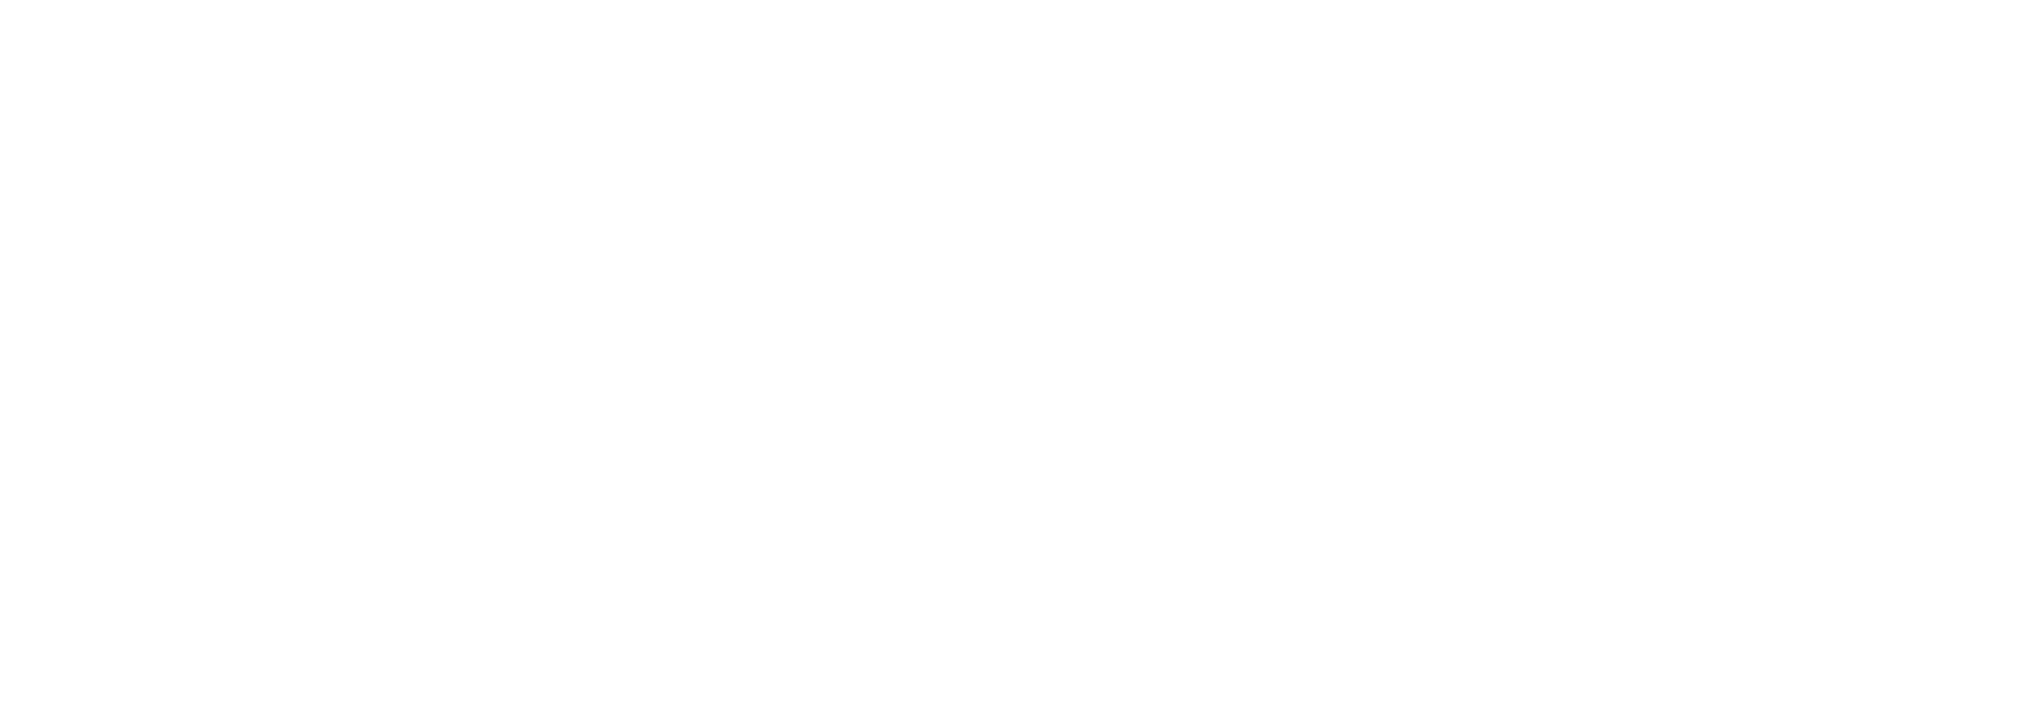 Rising Logo White